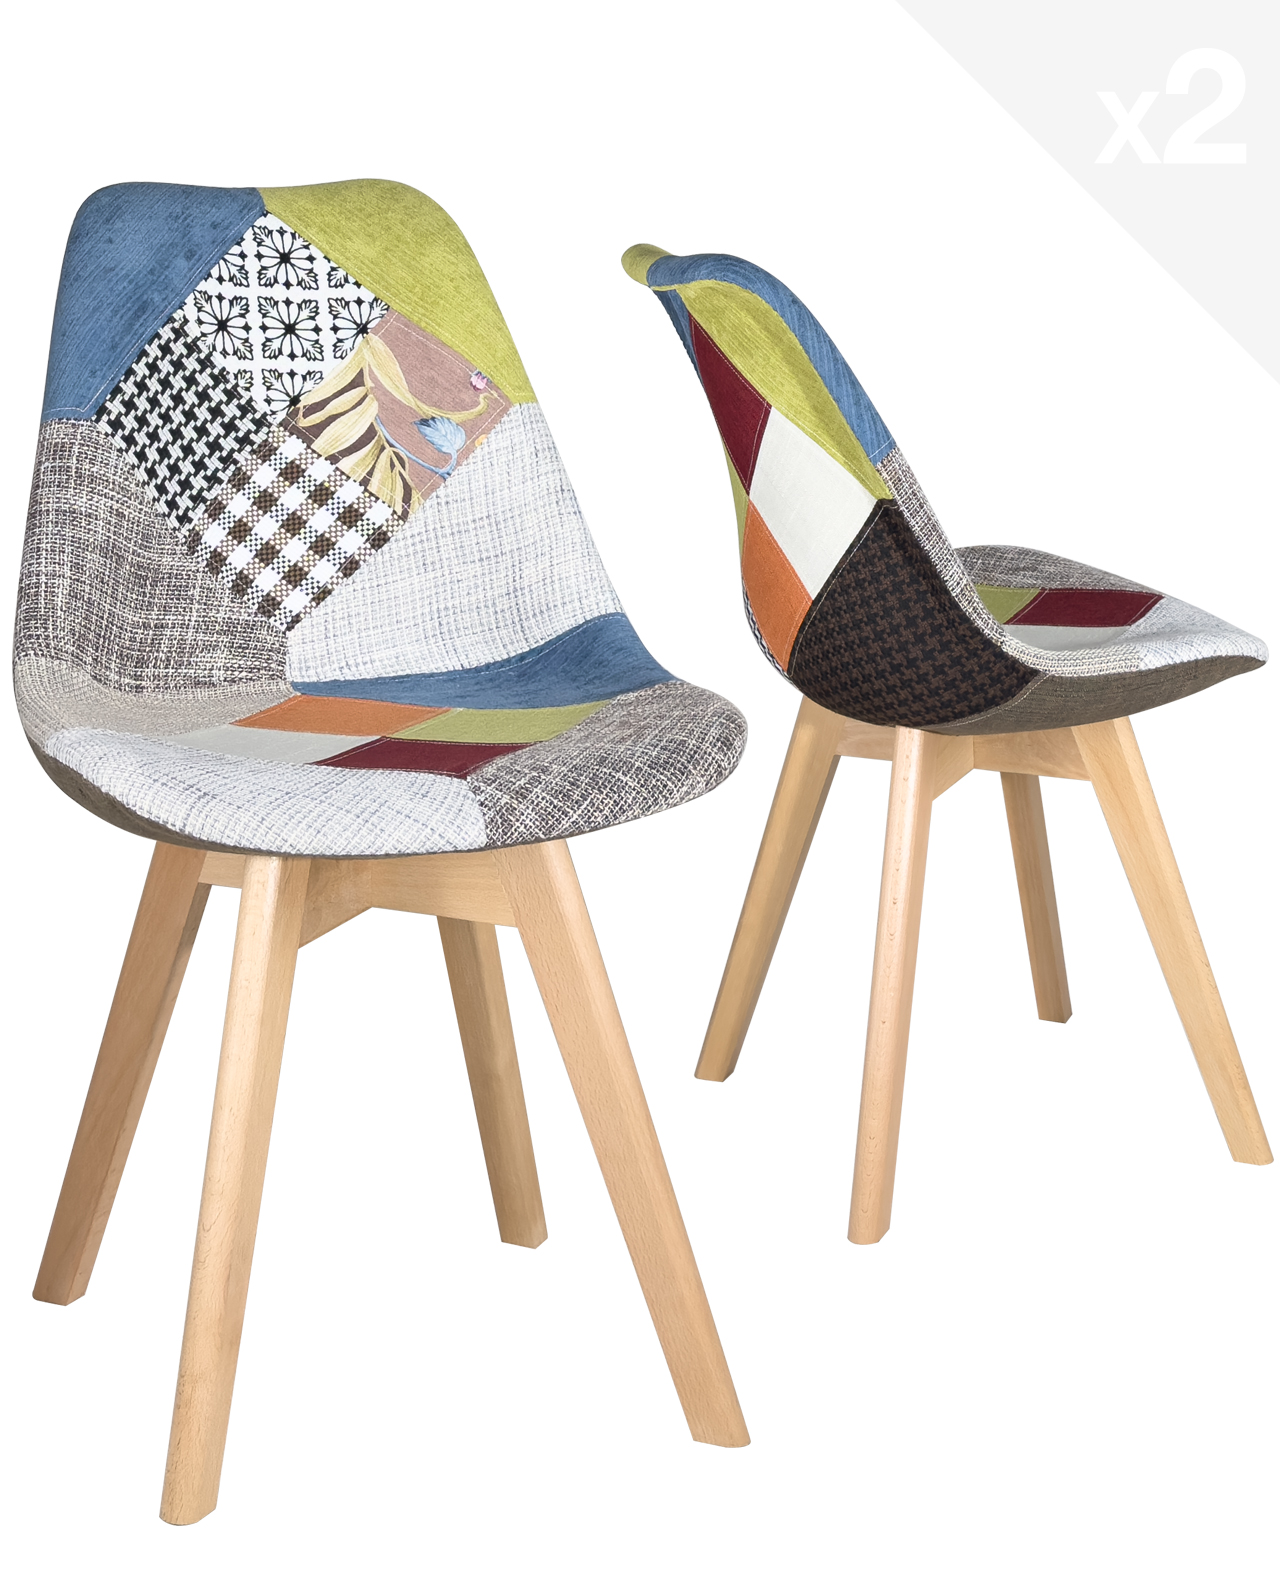 Chaise de salle à manger, set de 2, design scandinave, couleur